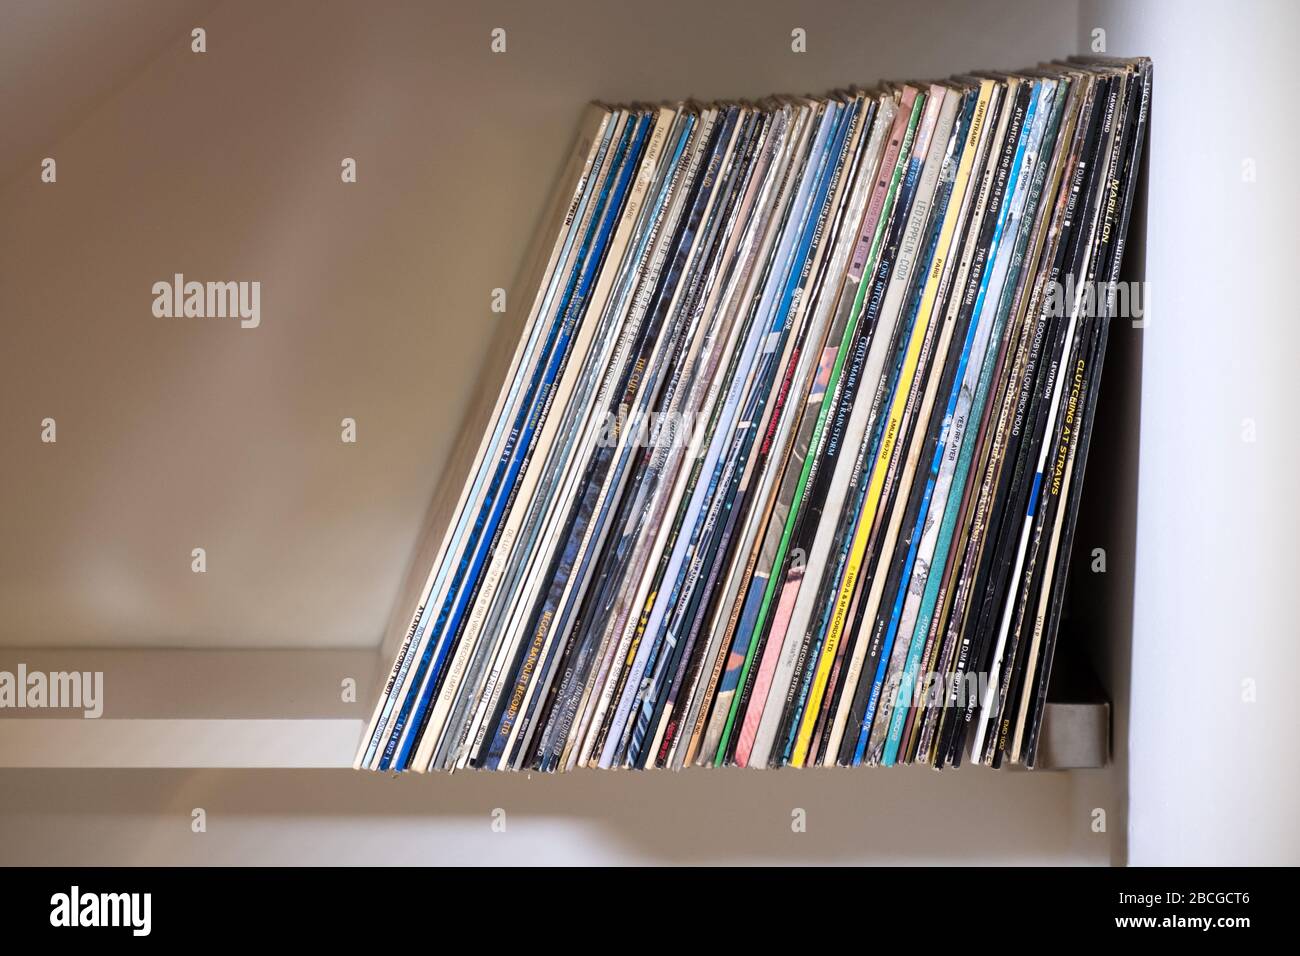 Eine Reihe von Plattenalben oder Vinyl-Schallplatten, die aufrecht auf einem Regal gelagert werden Stockfoto